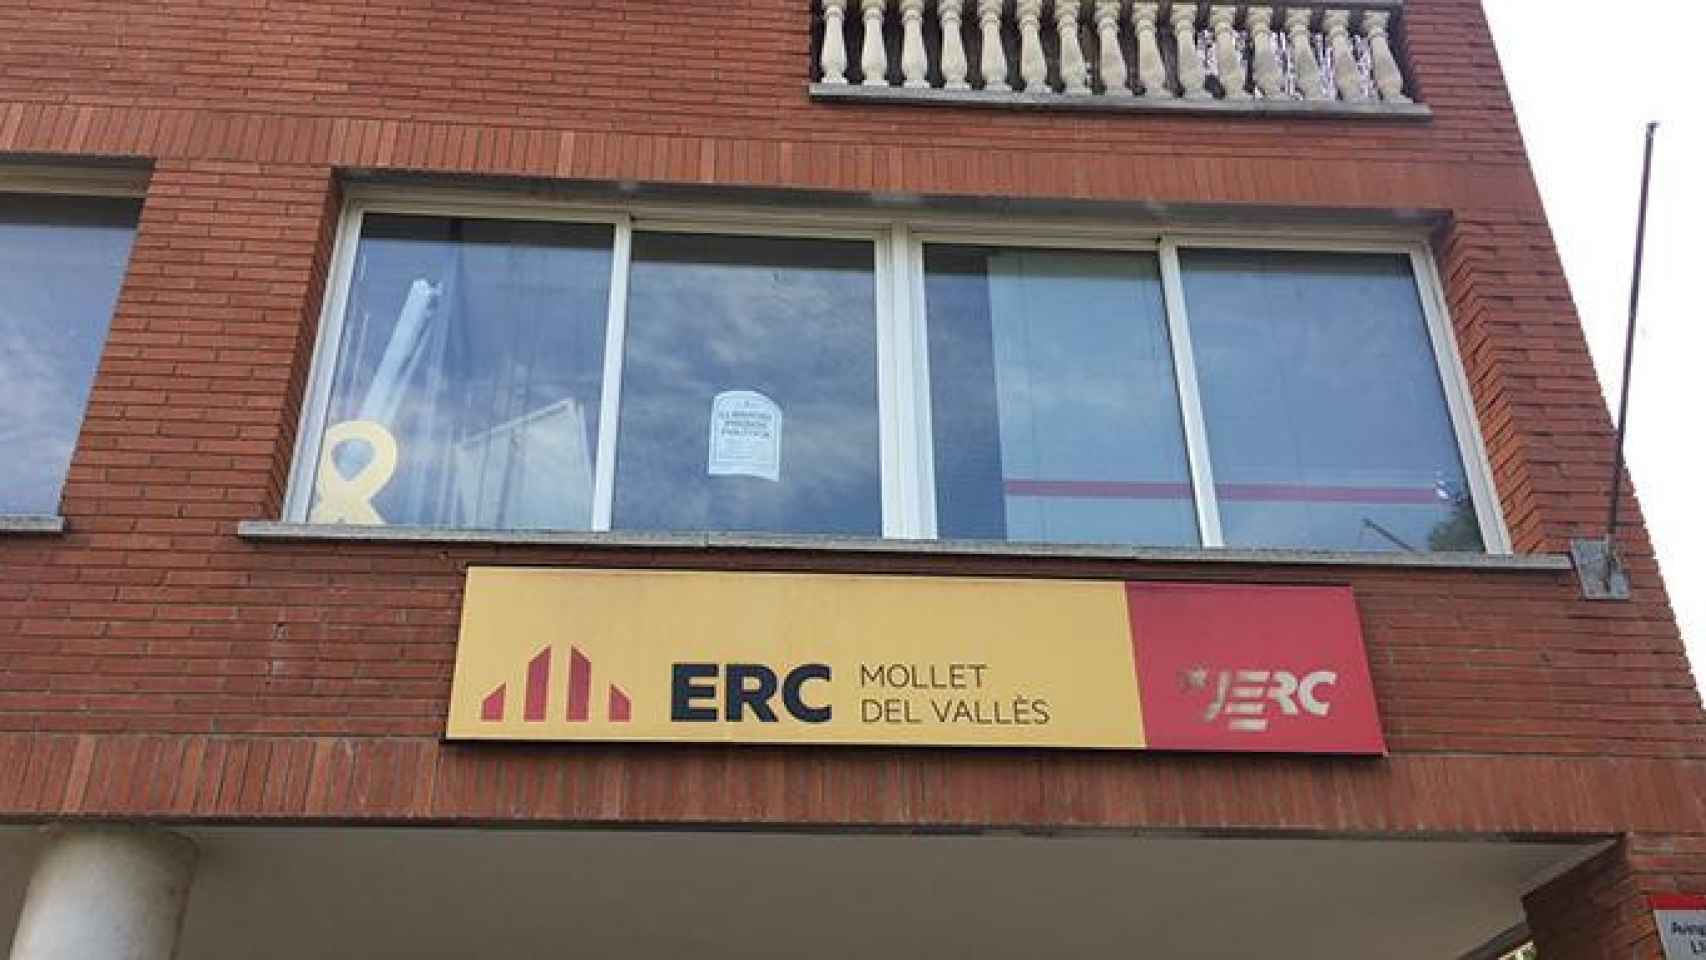 La sede de ERC en Mollet (Barcelona) ha sido objeto de un acto vandálico / CG